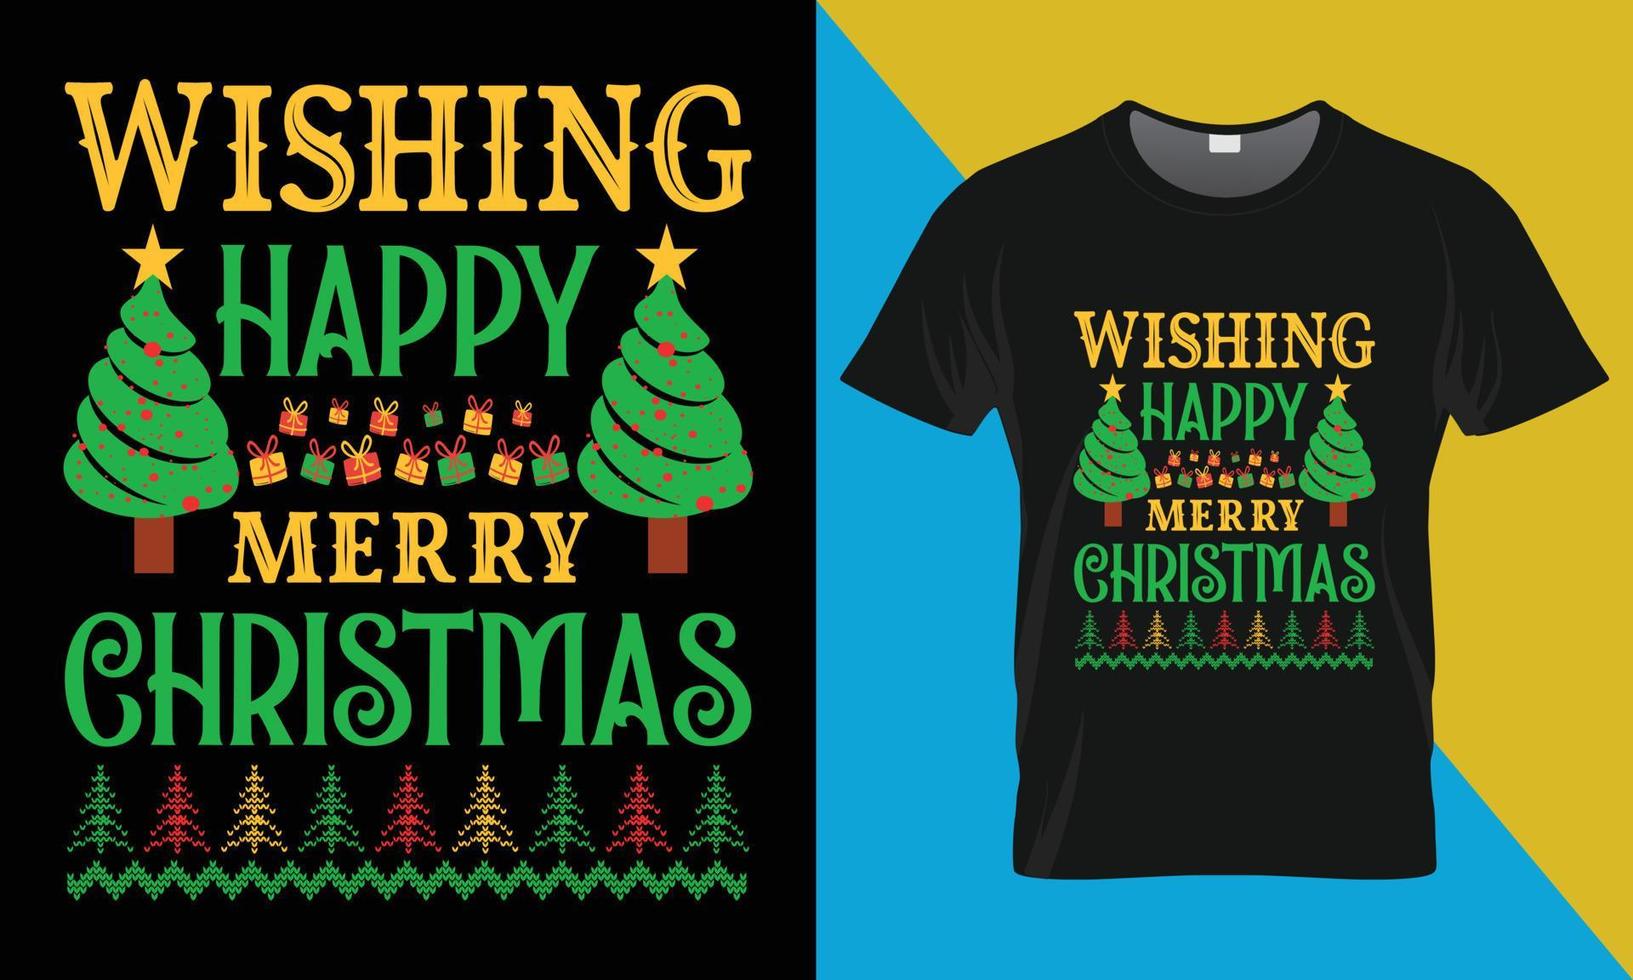 Kerstmis typografie vector t overhemd ontwerp, wensen gelukkig vrolijk Kerstmis